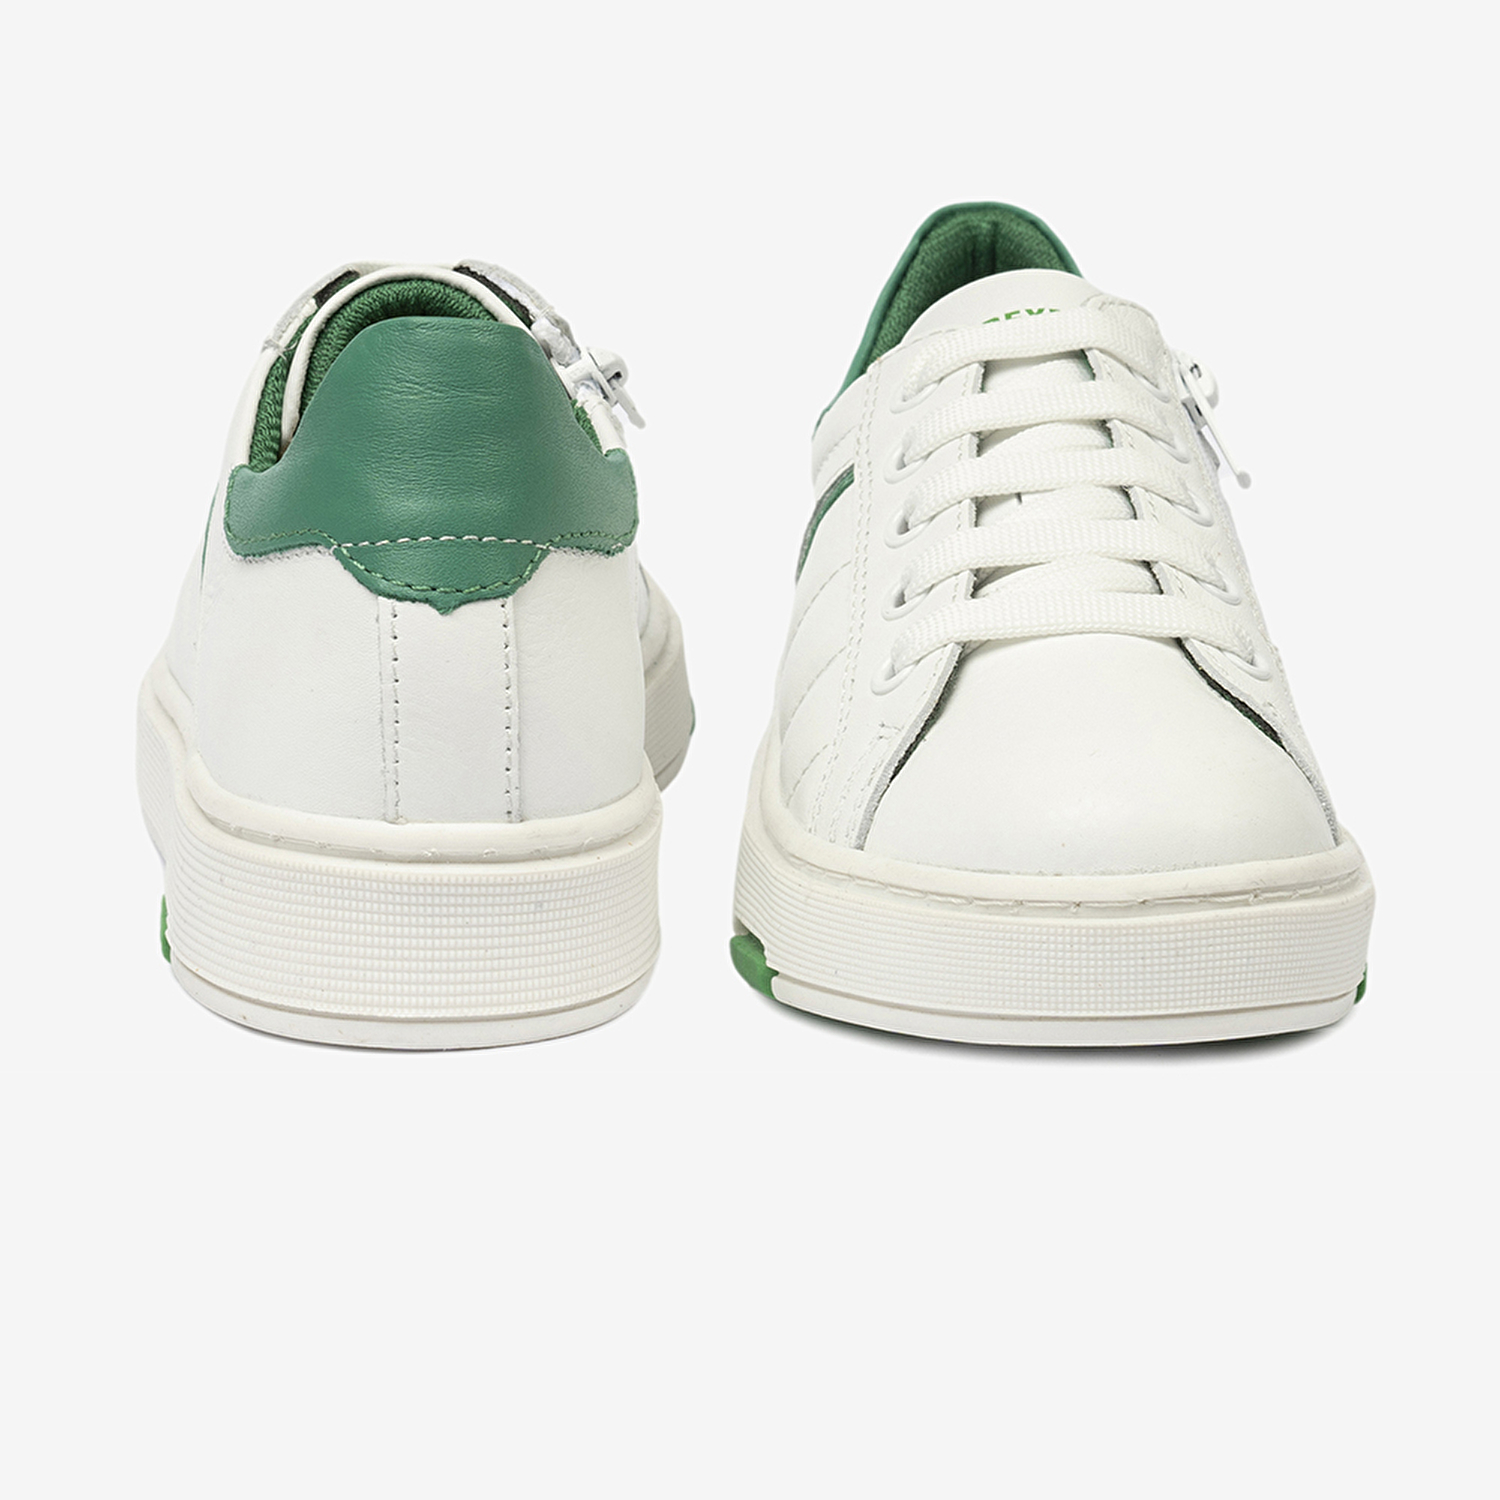 Erkek Çocuk Beyaz Yeşil Hakiki Deri Sneaker Ayakkabı 4Y5NA59501-7